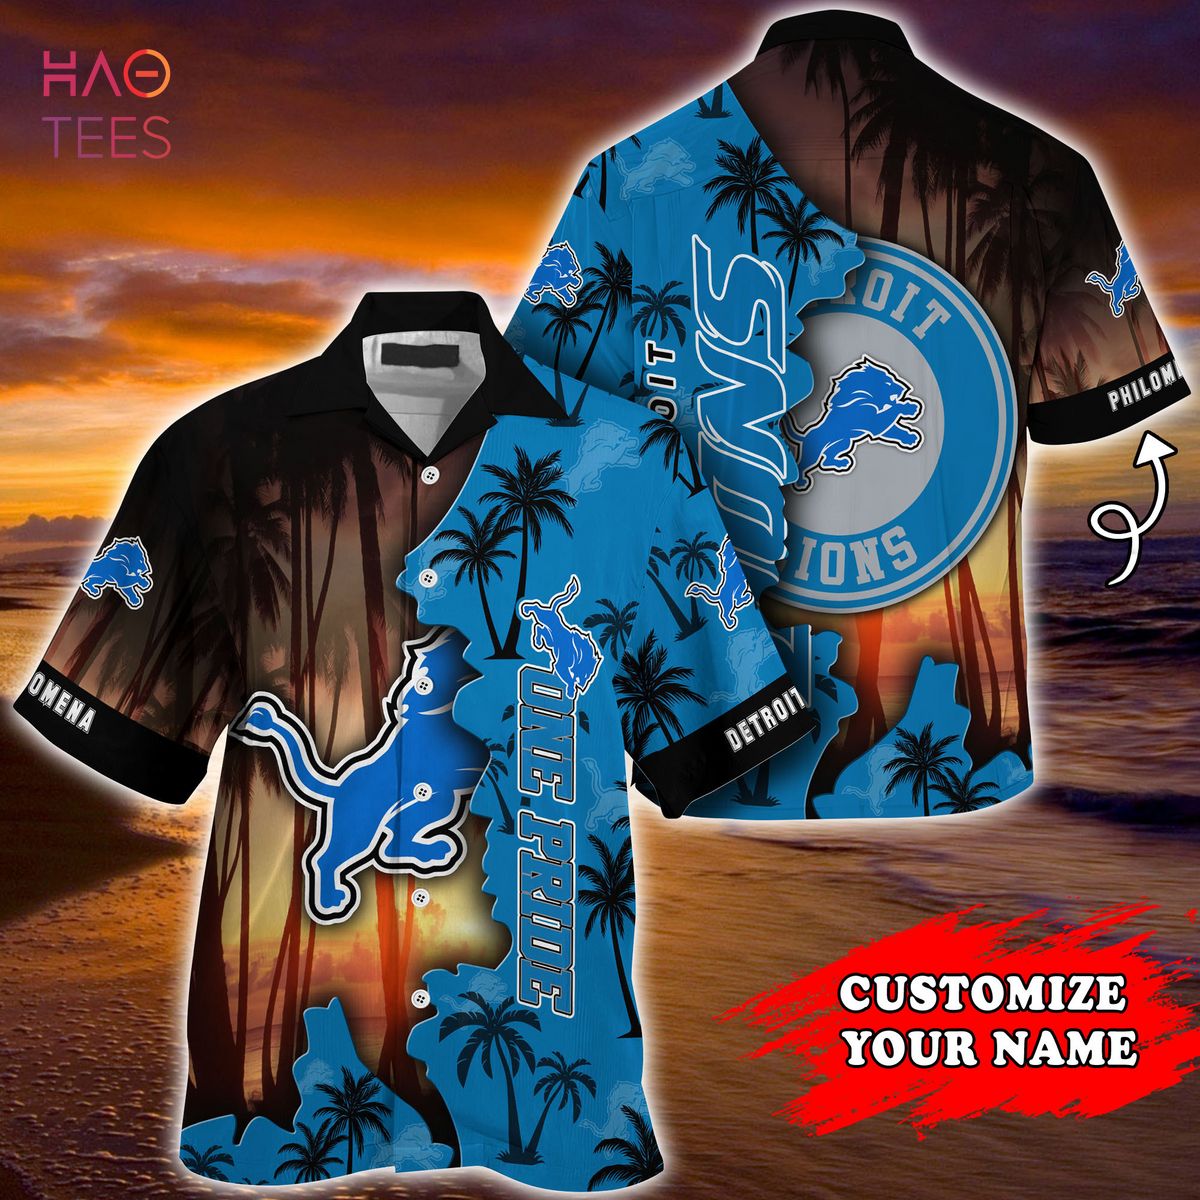 Detroit Lions NFL Customized Summer Hawaiian Shirt And Short